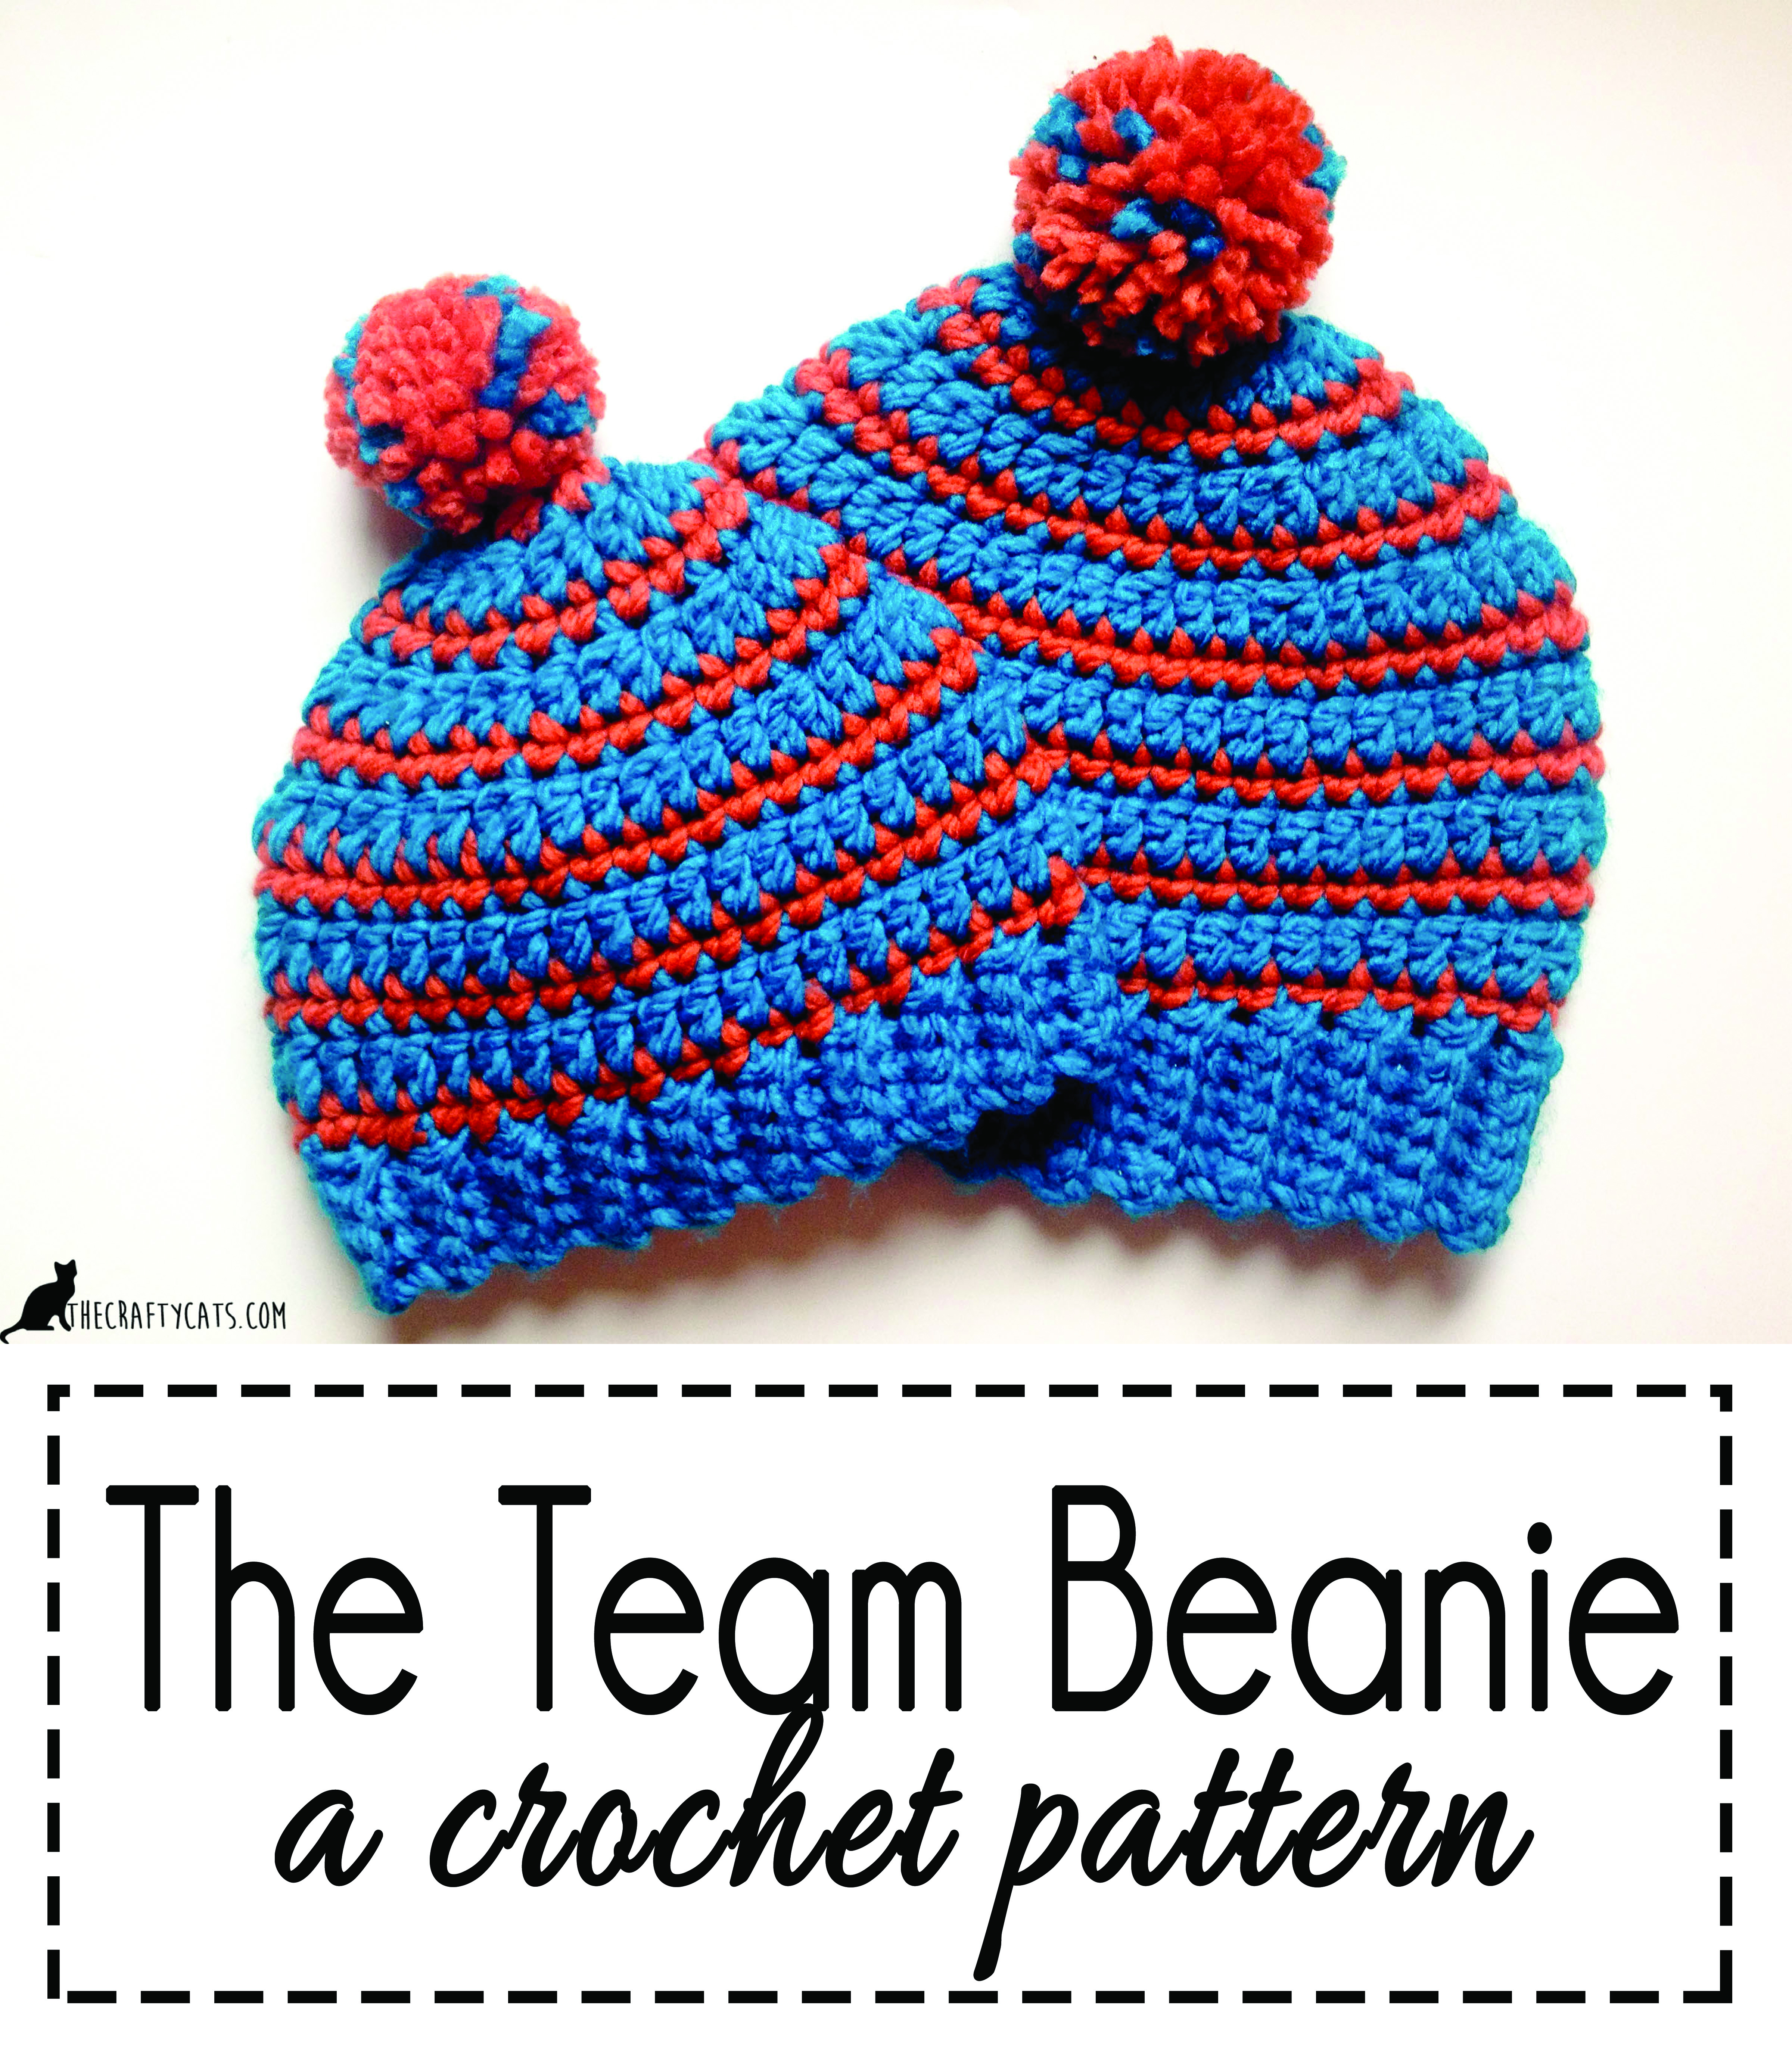 Crochet Striped Beanie Pattern The Team Beanie Crochet Striped Beanie And Messy Bun Hat Pattern